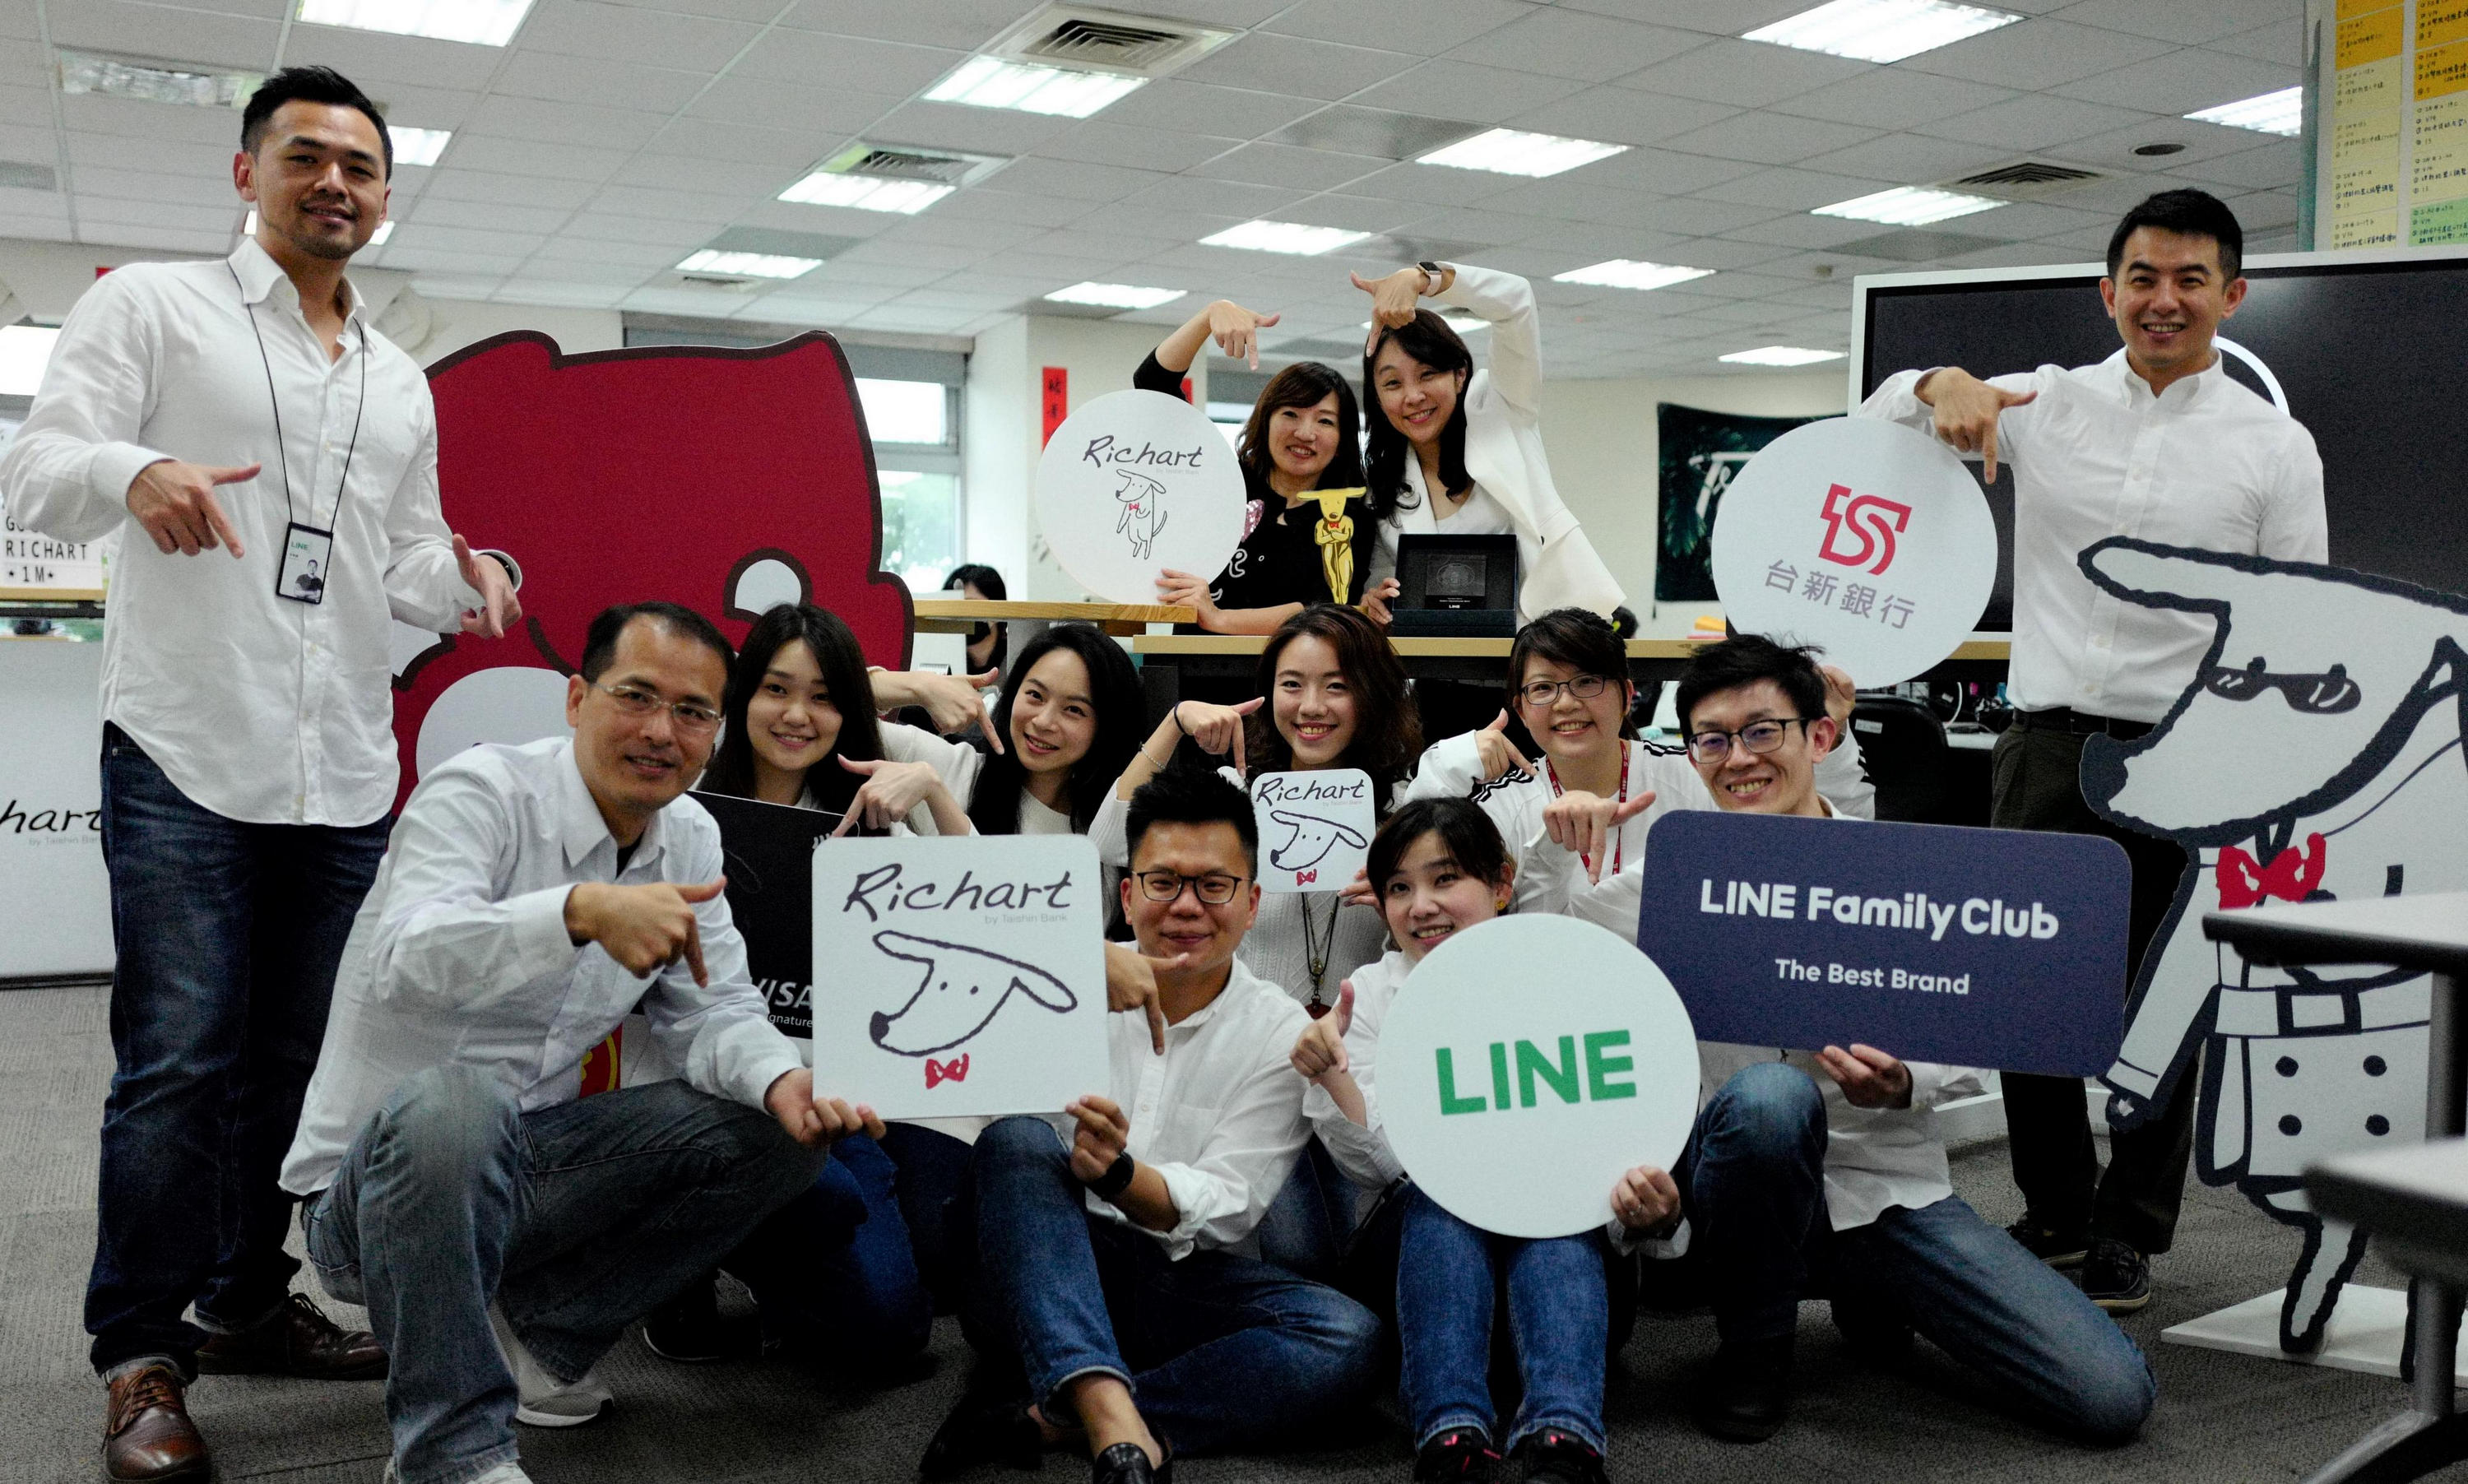 20200519_台新銀 創新洞察需求 獲「LINE Family Club - The Best Brand」殊榮_新聞圖片-2